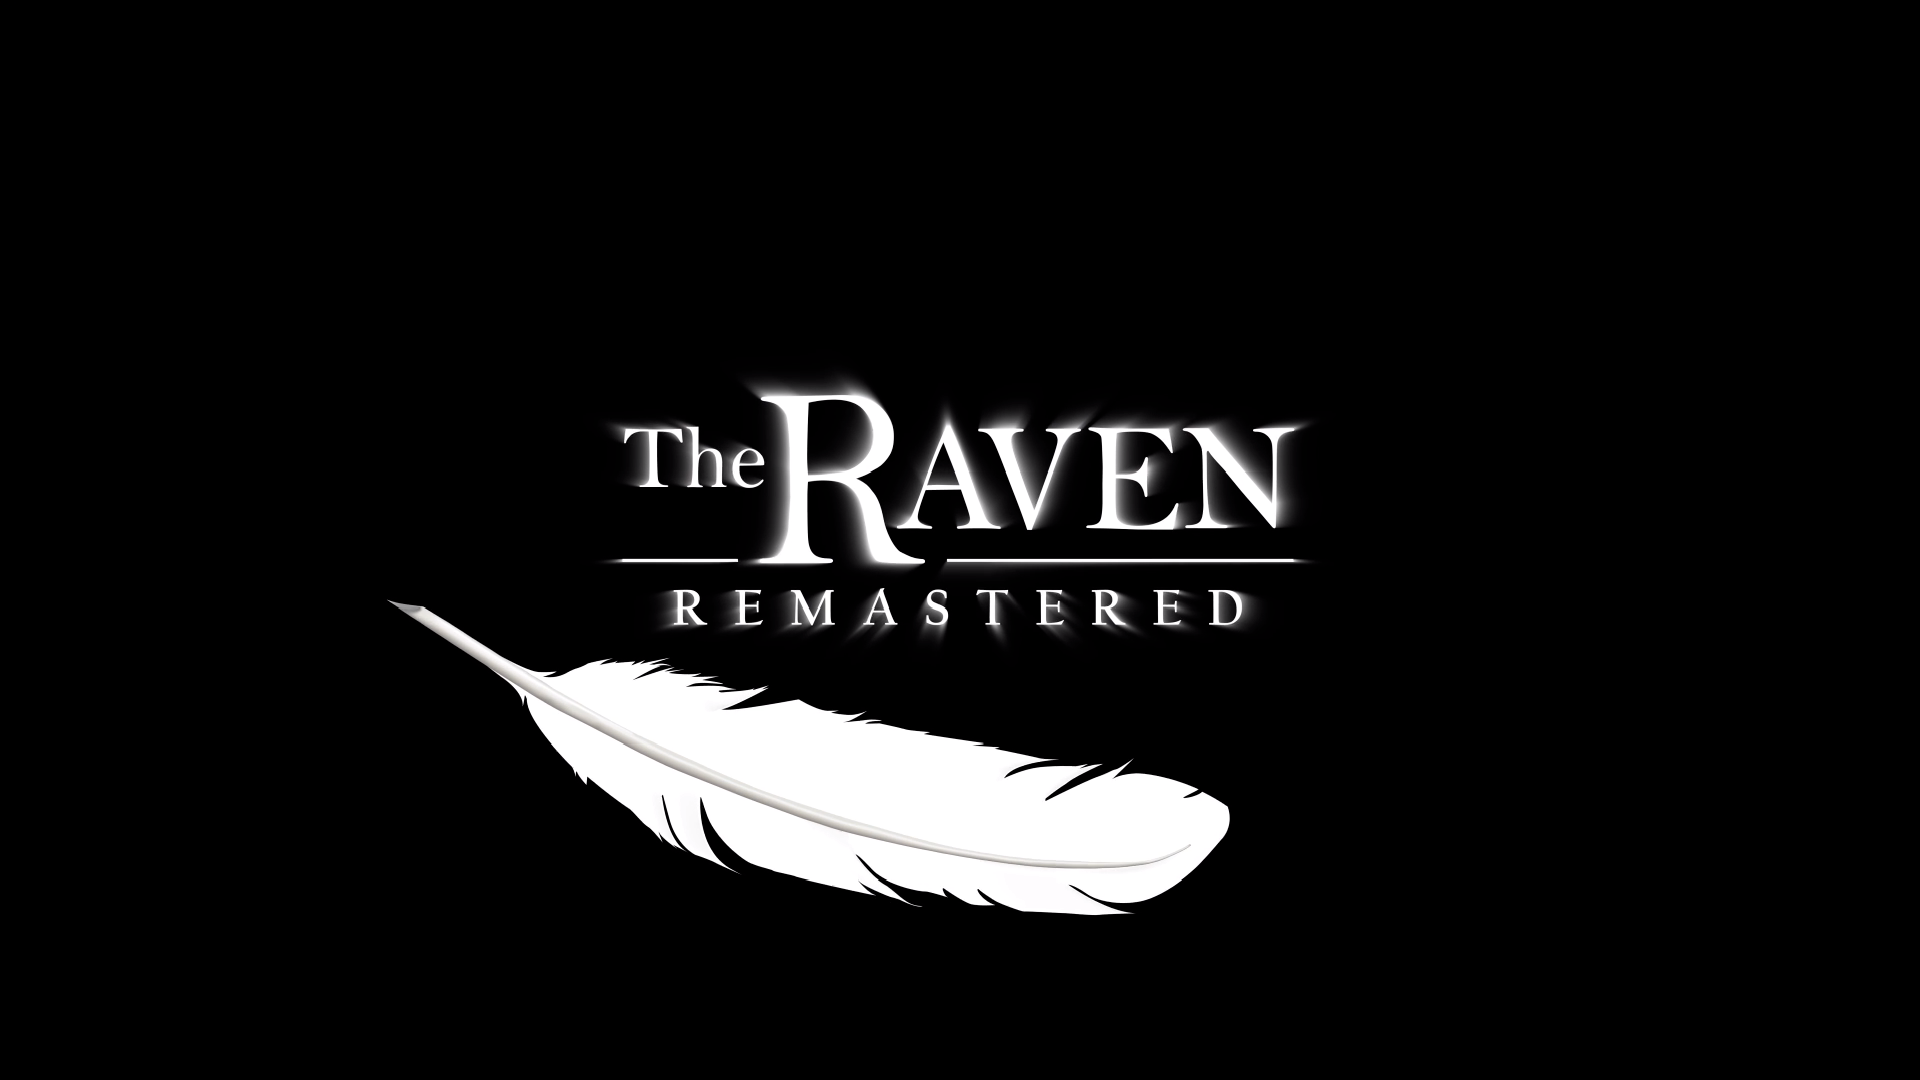 The Raven Remastered. The Raven Remastered ps4. The Raven Remastered ps4 прохождение. The Raven Remastered ps4 Cover. The ravens are the unique guardians